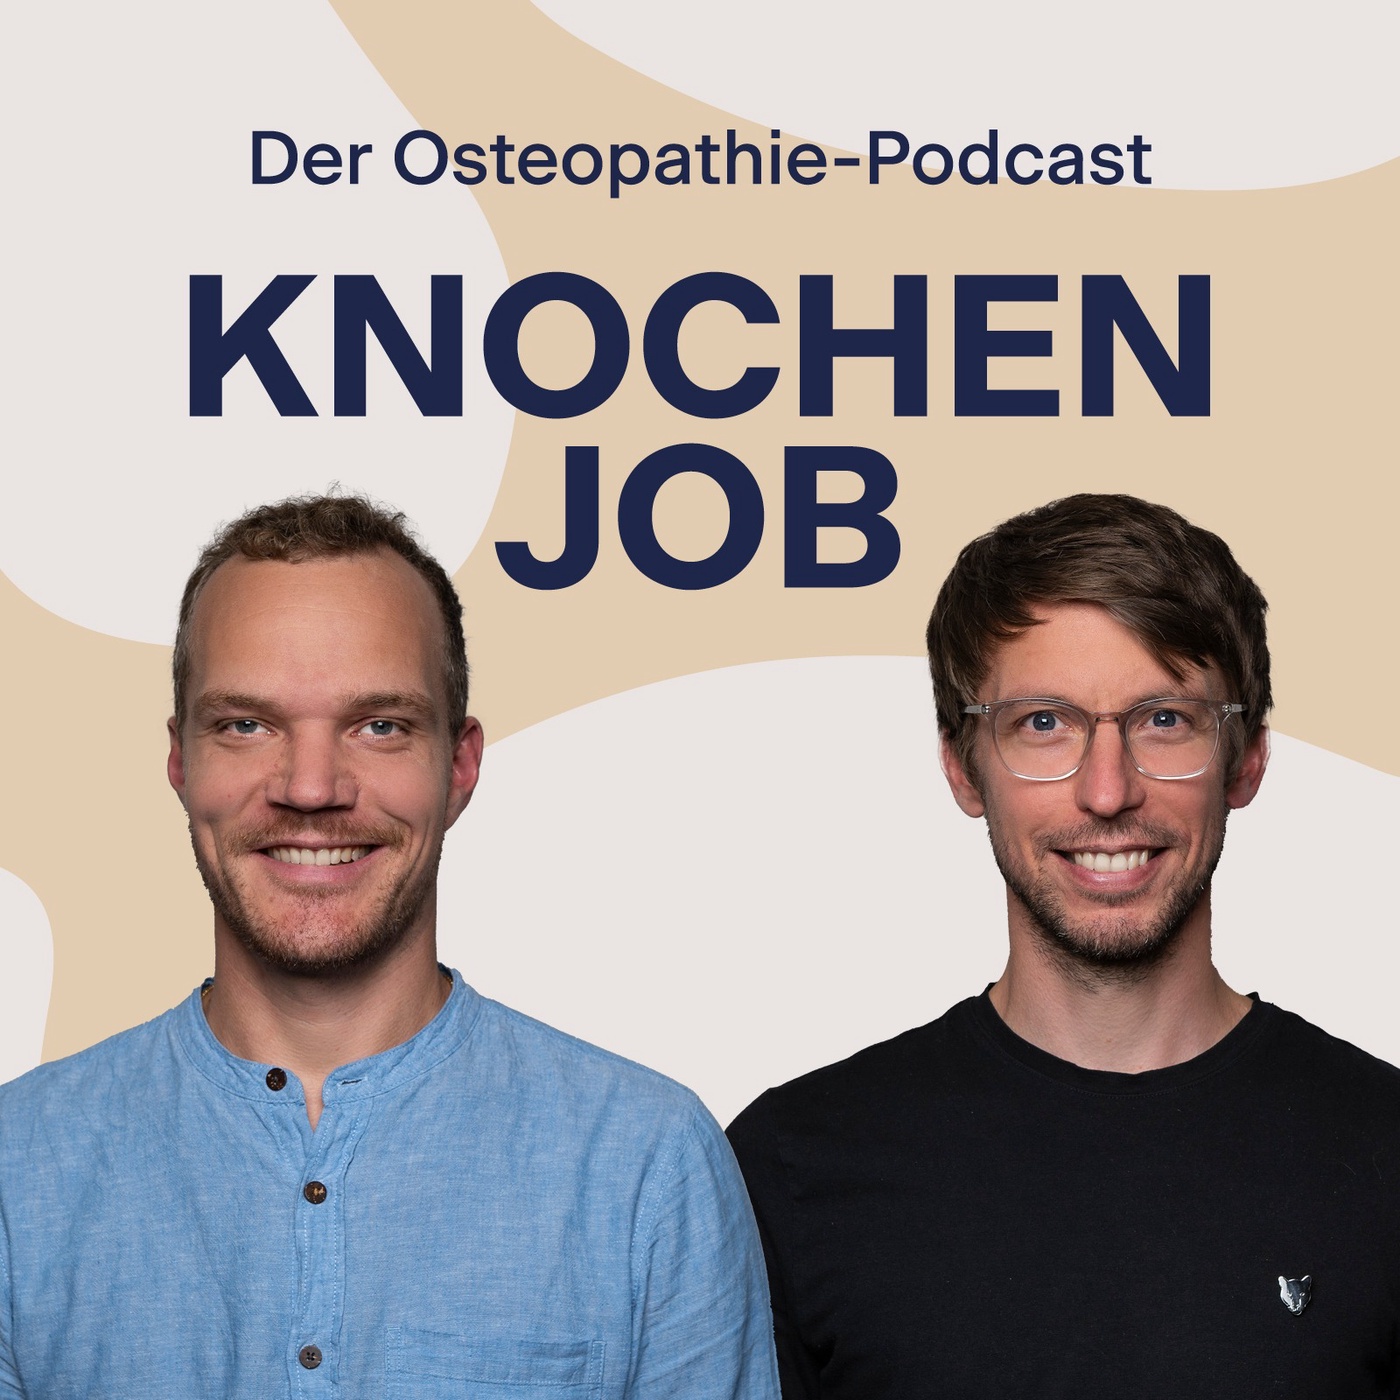 Interview-Spezial mit Eva Möckel: Die Diversität der osteopathischen Ansätze ist bereichernd